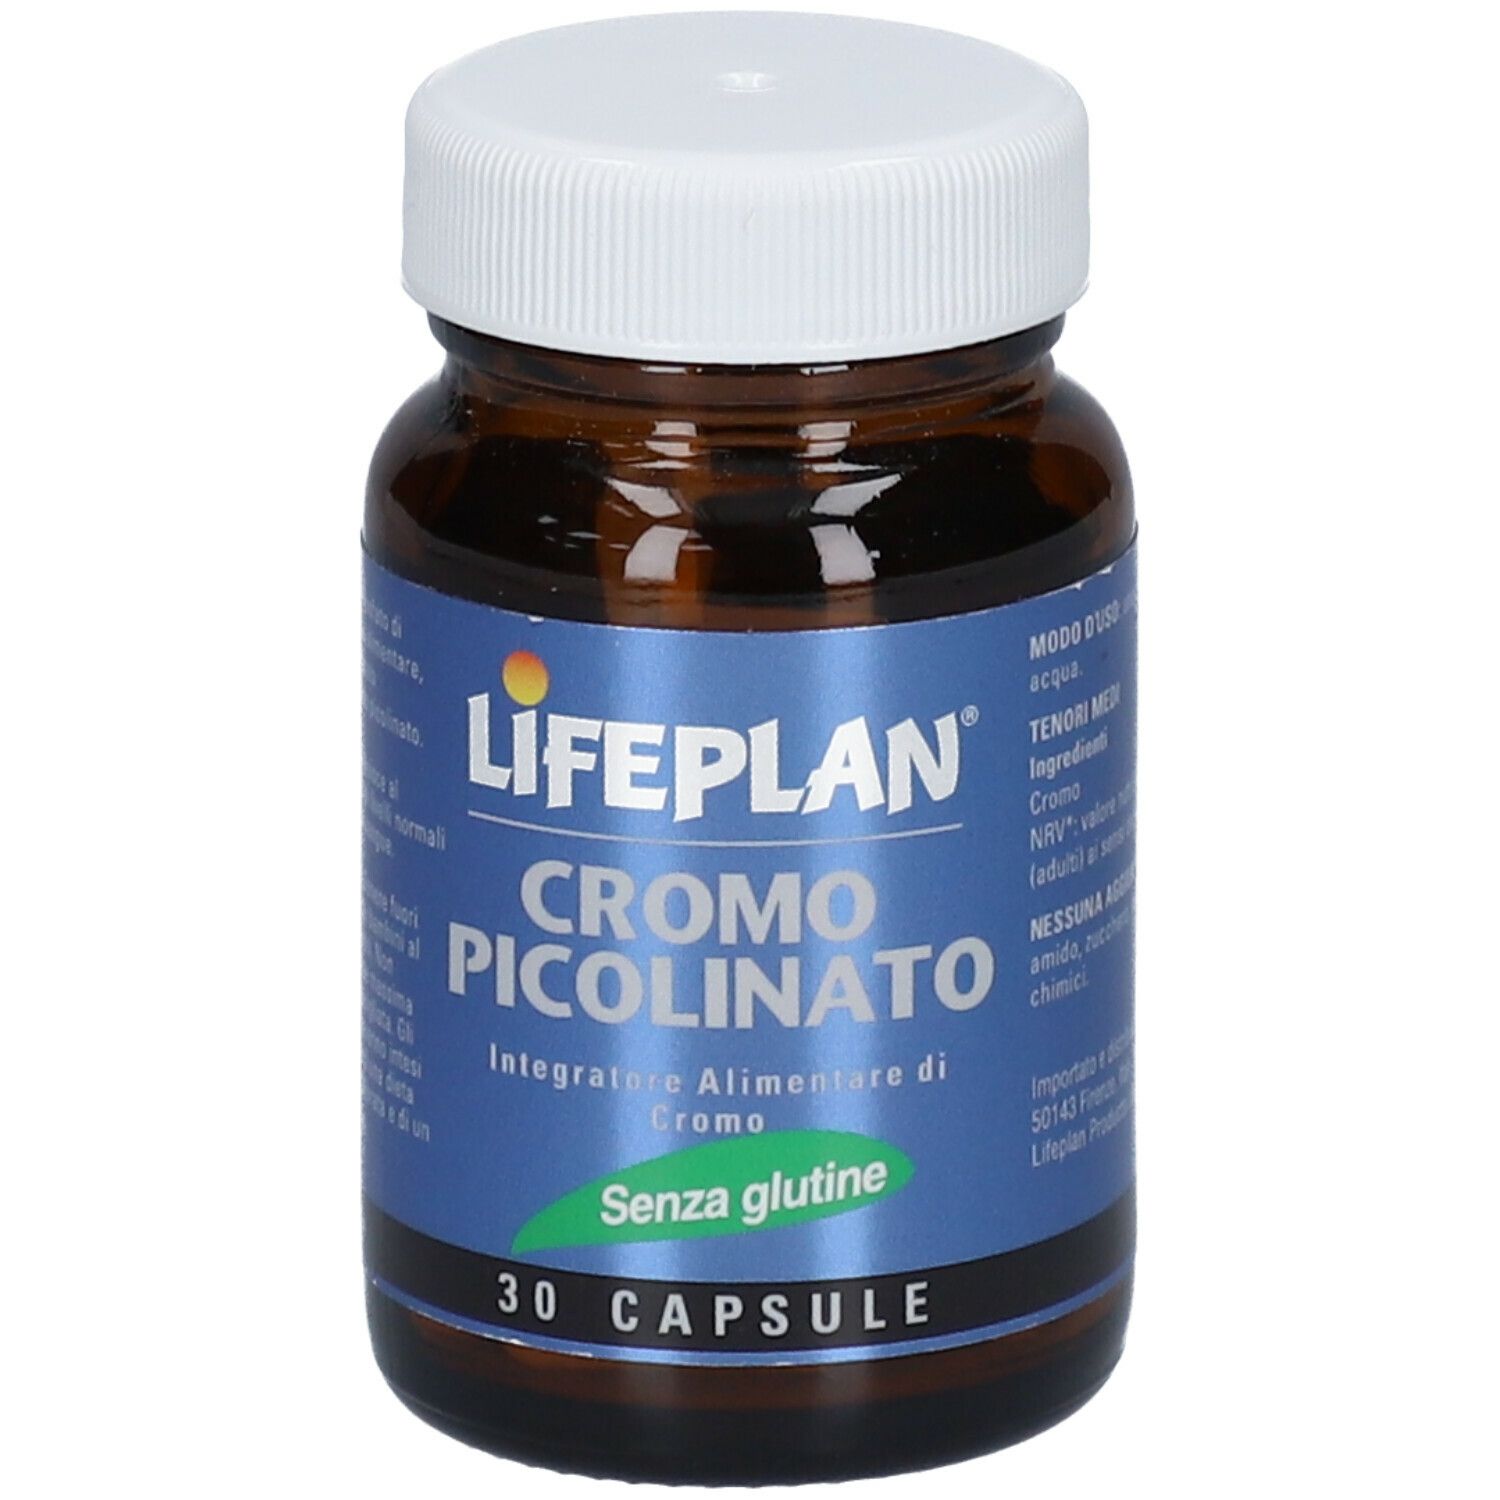 LIFEPLAN® Cromo Picolinato